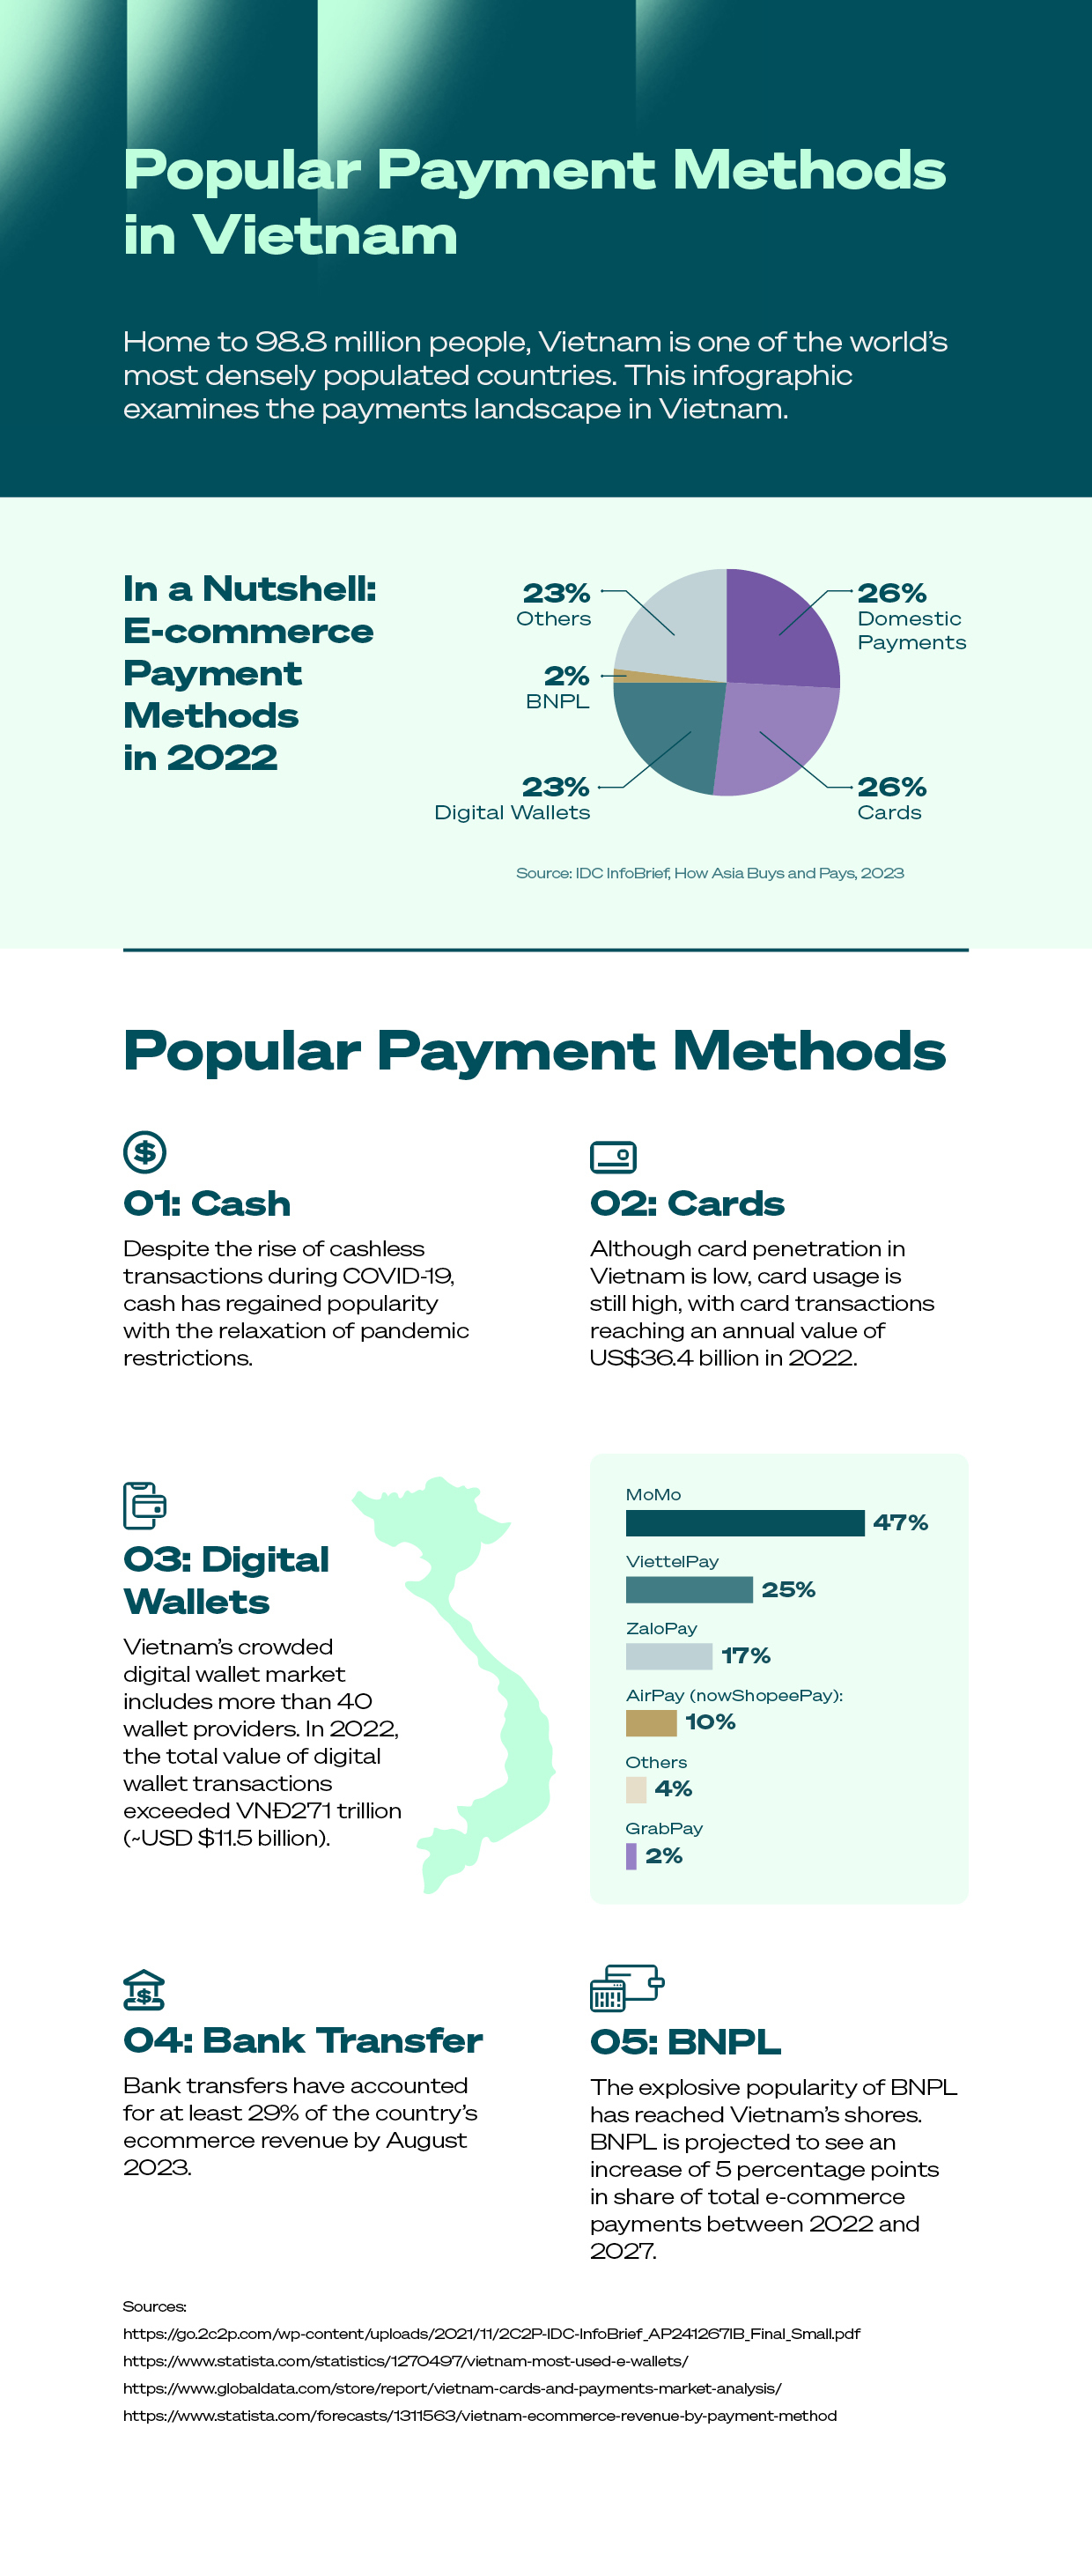 Popular Payment Methods in Vietnam 2023